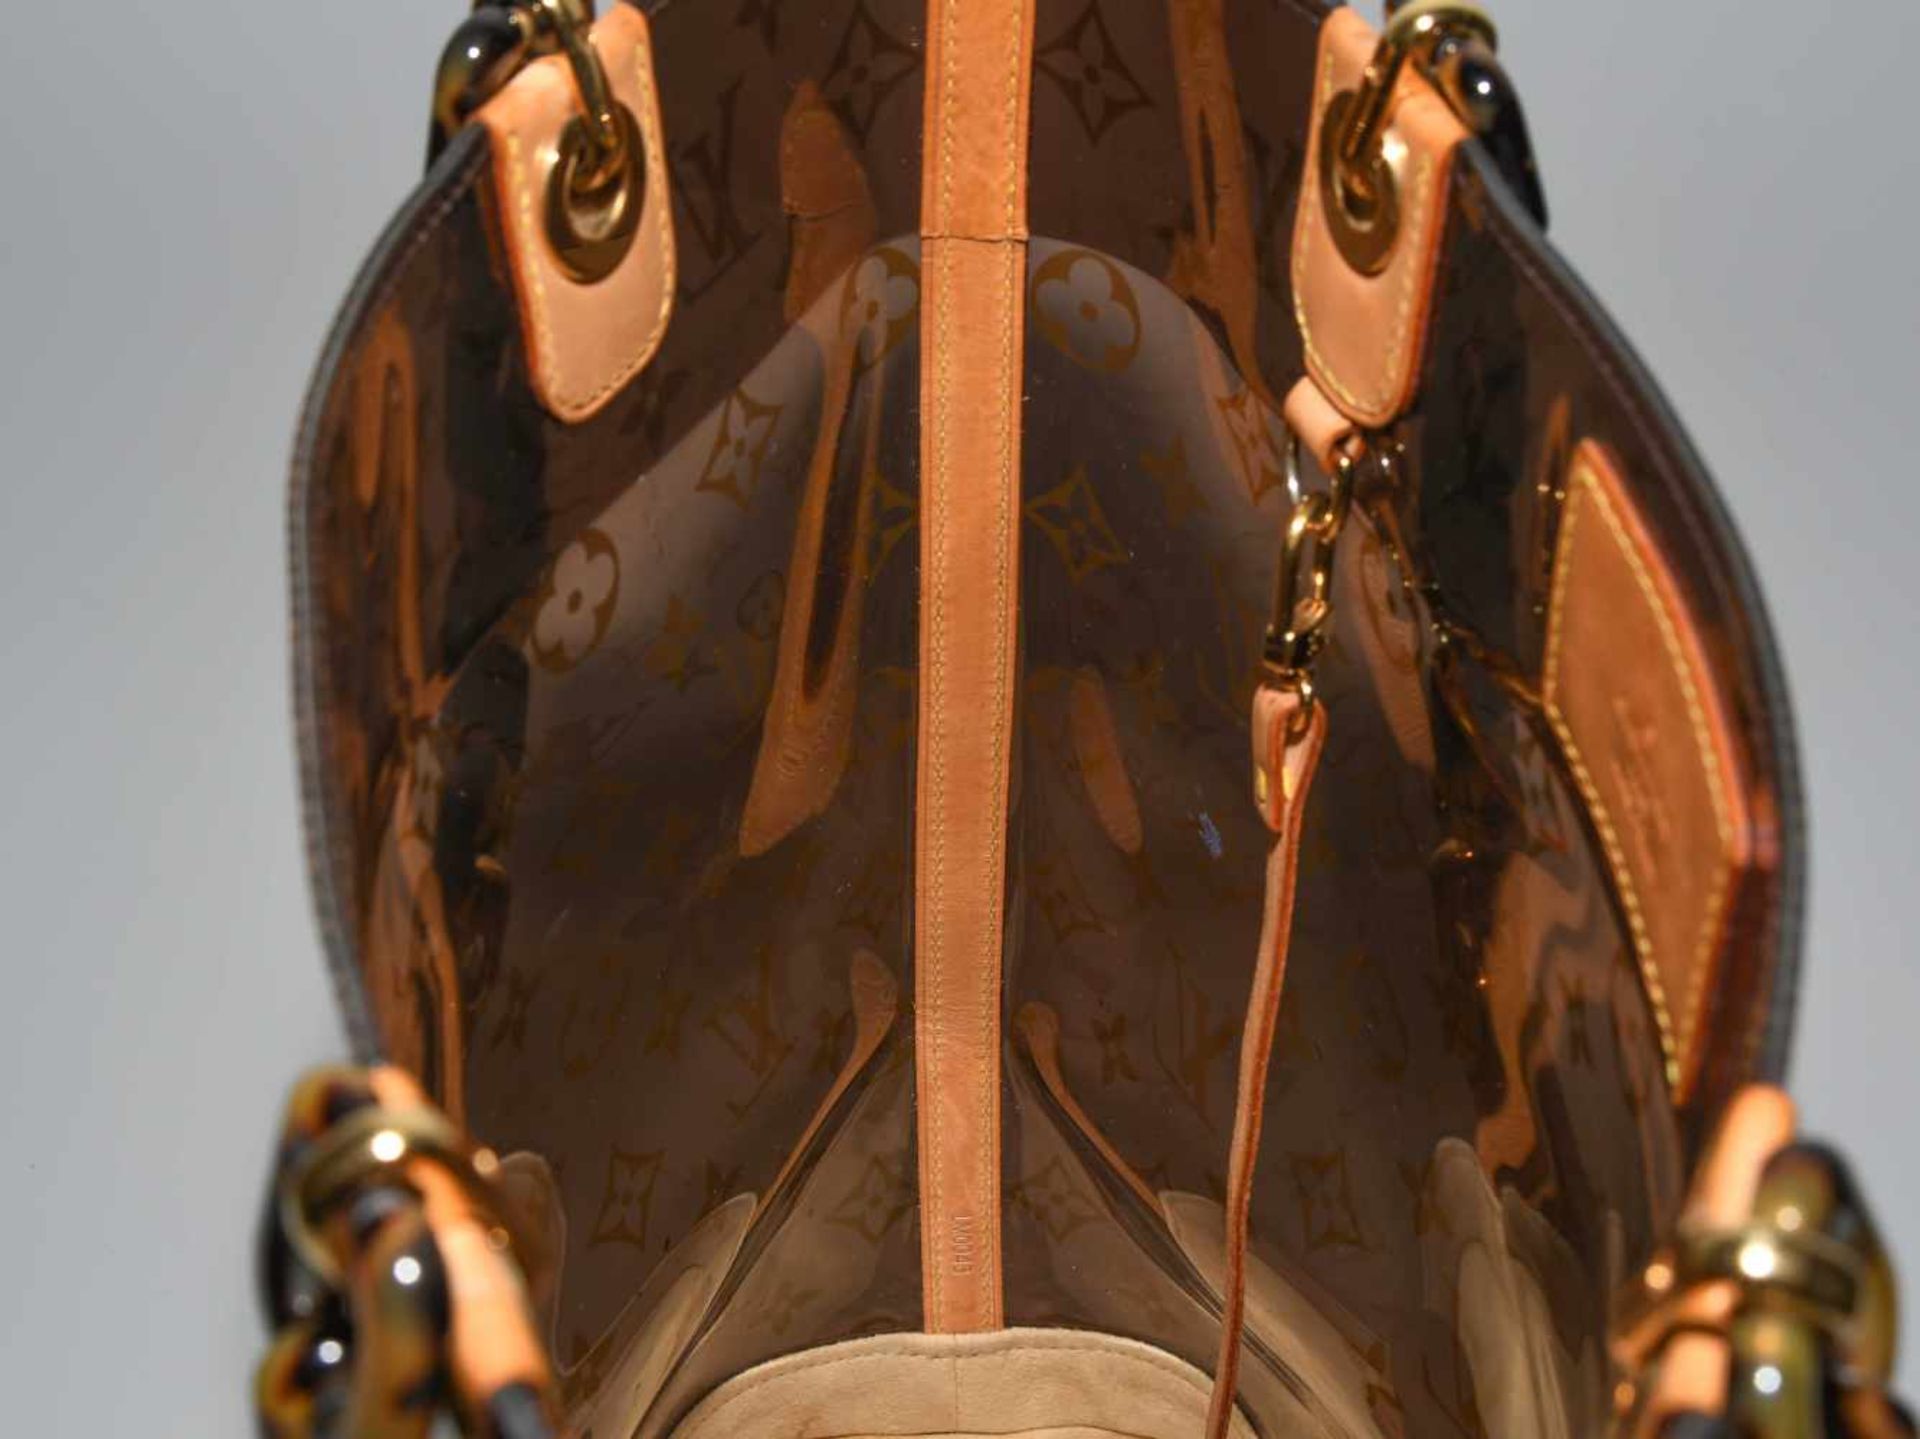 Louis Vuitton, "Ambre sac cabas"Schultertasche aus braunem Vinyl mit klassischem Monogram Muster. - Bild 3 aus 17